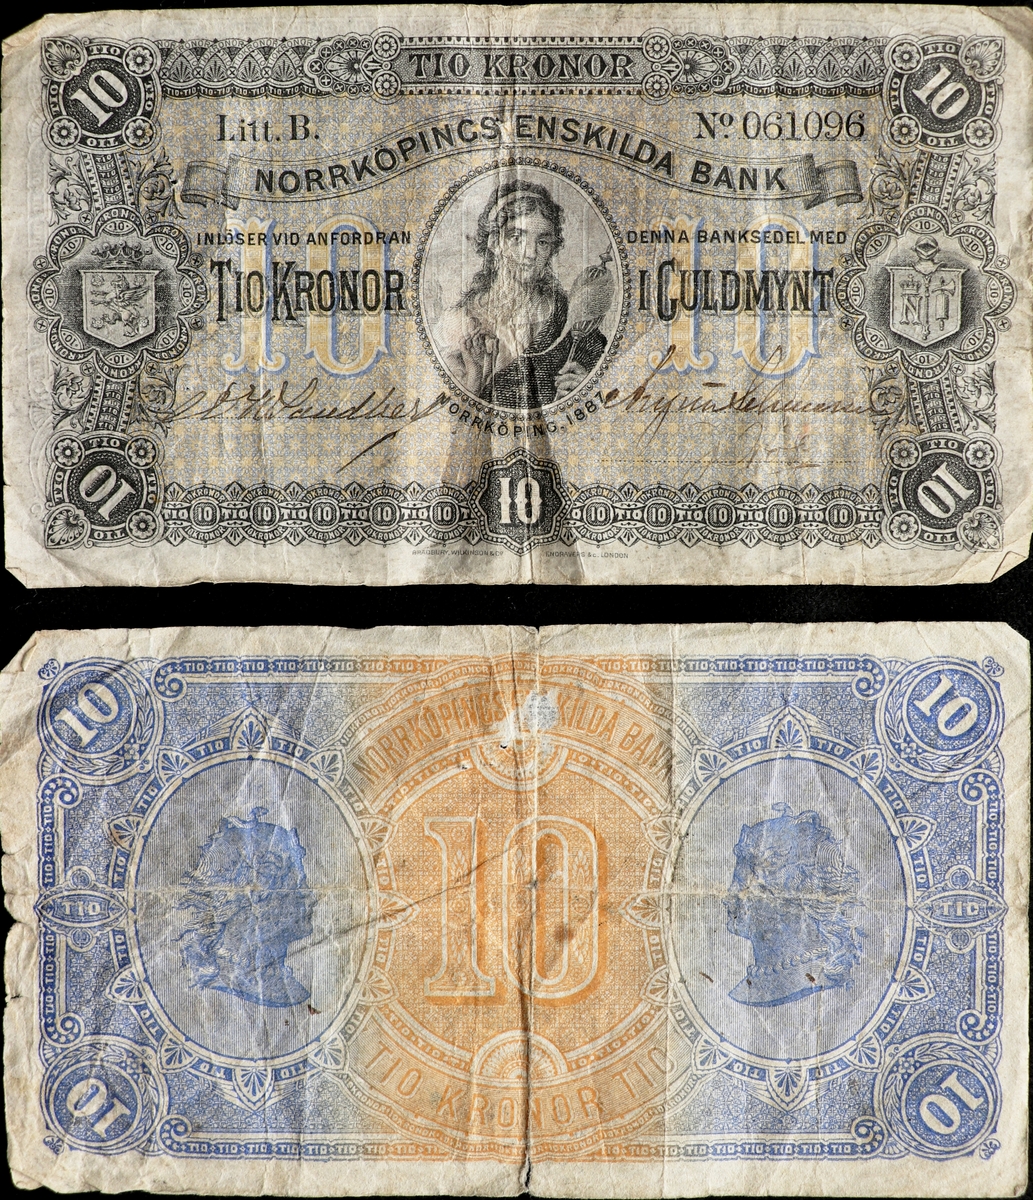 Två blågrån sedlar på tio kronor från Norrköpings Enskilda Bank från 1887. Serienummer 5762 och 61 096 tryckt på höger sida. Tre signaturer på sedeln. I mitten på vänster kant finns Östergötlands landskapsvapen och i mitten på höger kant finns Norrköpings gamla stadsvapen i form av ett N krönt med en krona, en spira och en yxa. I mitten av sedeln en oval med en bild av en kvinna med en slända.
Baksidan är blå på sidorna och orange i mitten. I mitten står det 10 och på båda sidor om dem finns kvinnoansikten i profil. Klisterlapp på baksidan efter att sedeln suttit på en tavla.

Tillstånd vid förvärv: Ena sedelns färger är betydligt mer urblekta. Veck efter viktning.